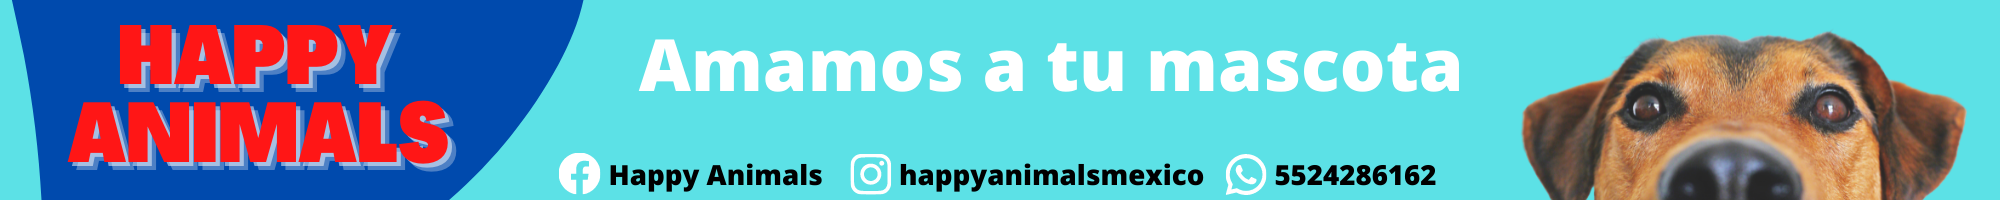 HAPPY ANIMALS